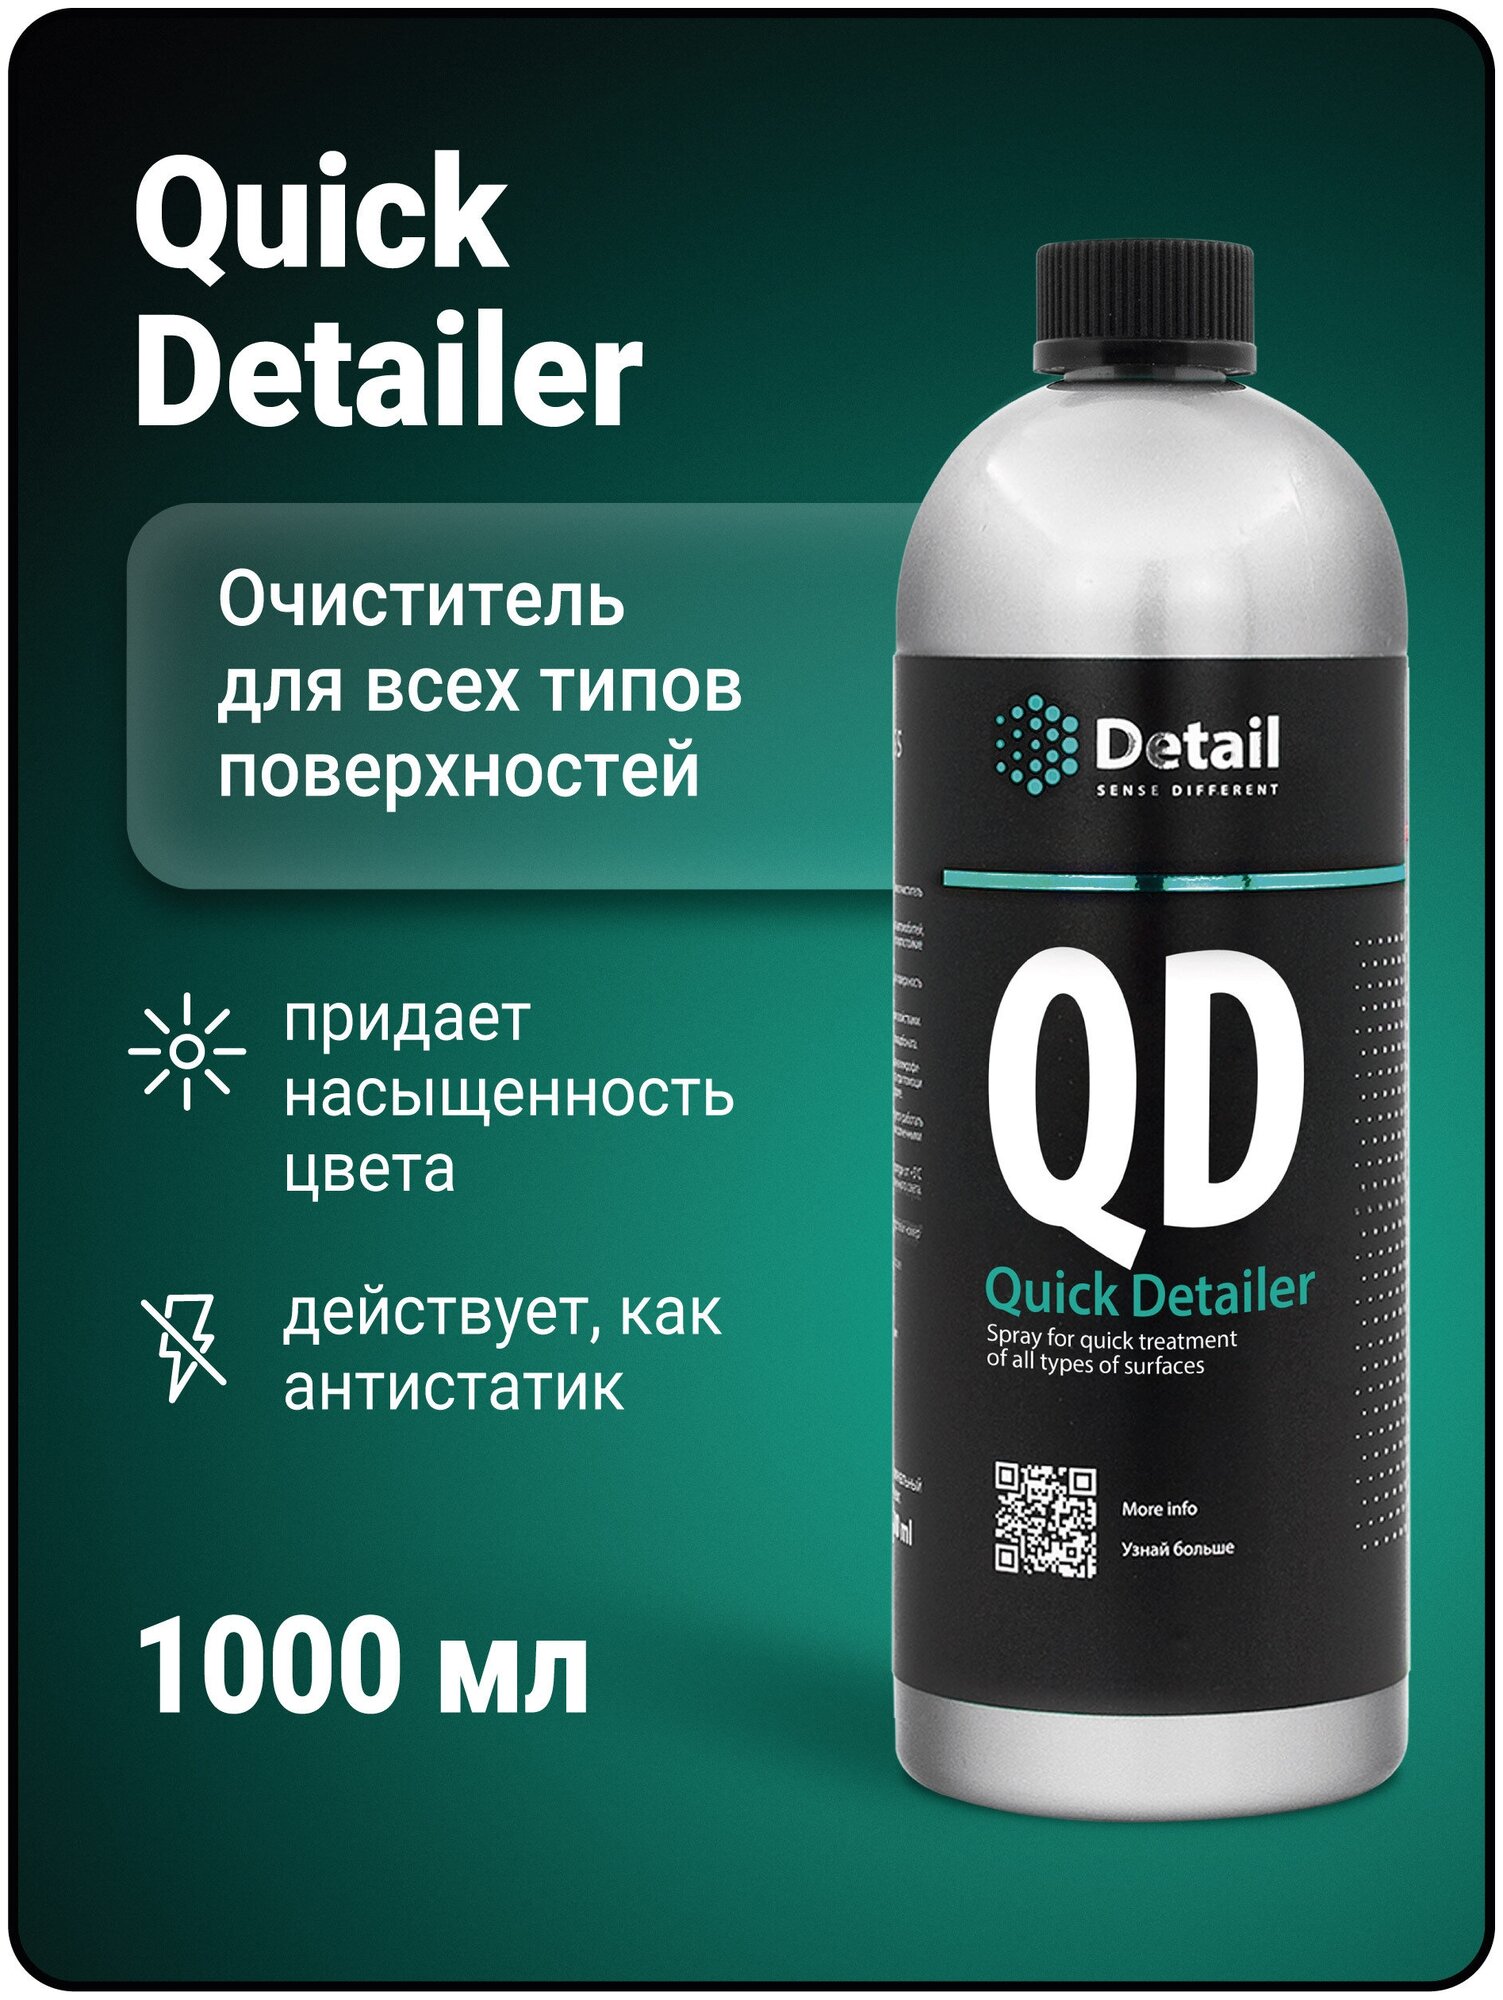 Спрей для быстрого ухода за всеми типами поверхностей QD "Quick Detailer" 1000 мл - фото №8